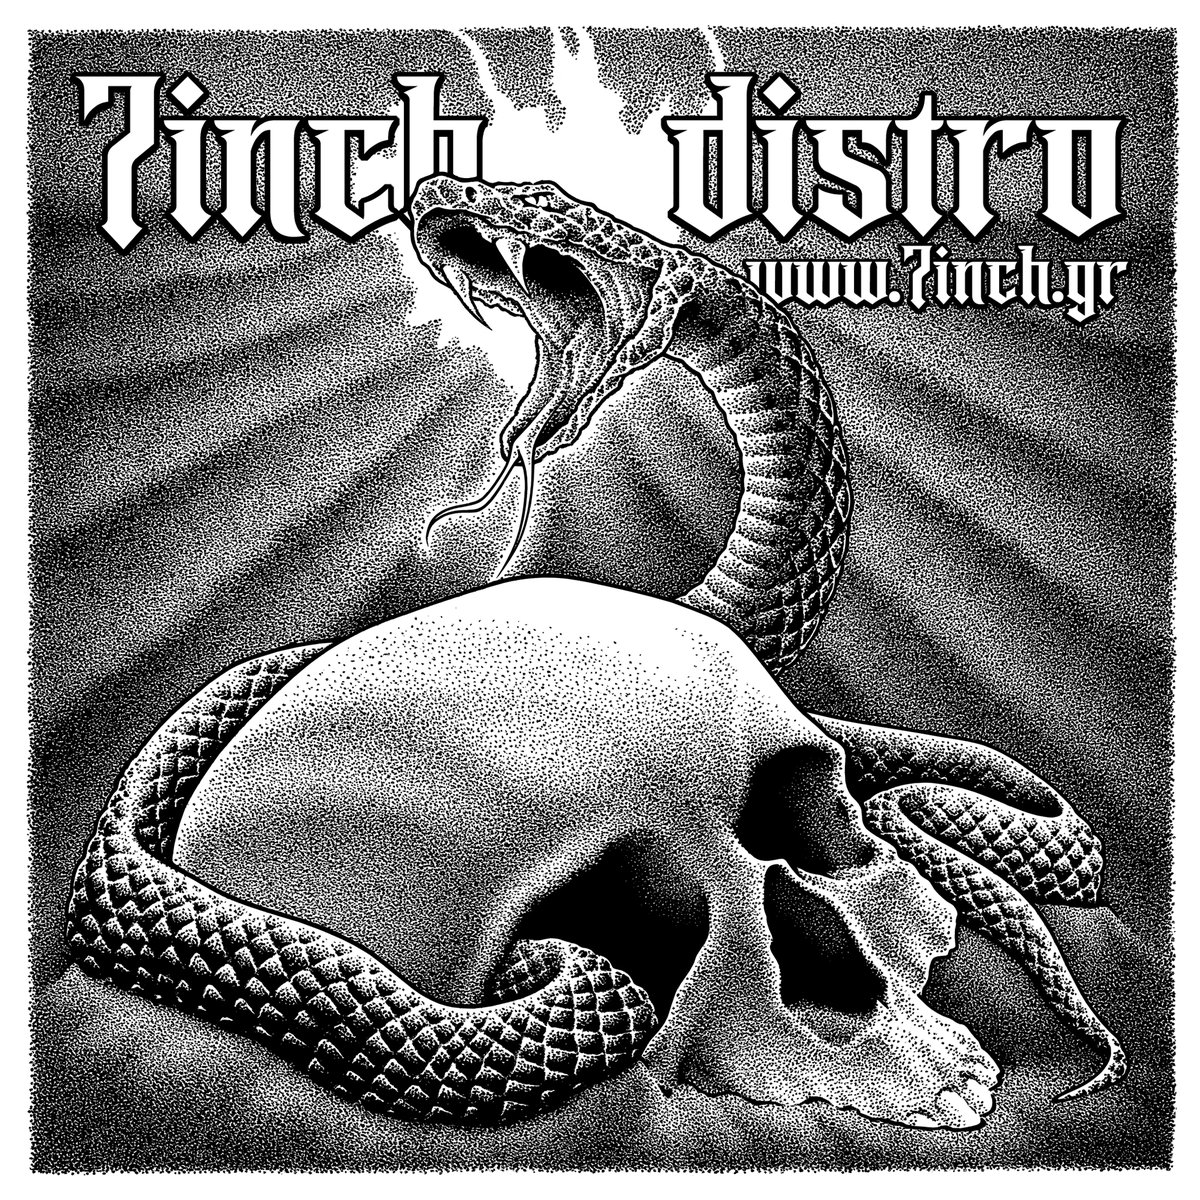 Sticker #artwork for 7inch Distro!
#illustration #penandink #stippling #artistsontwitter #skull #snake